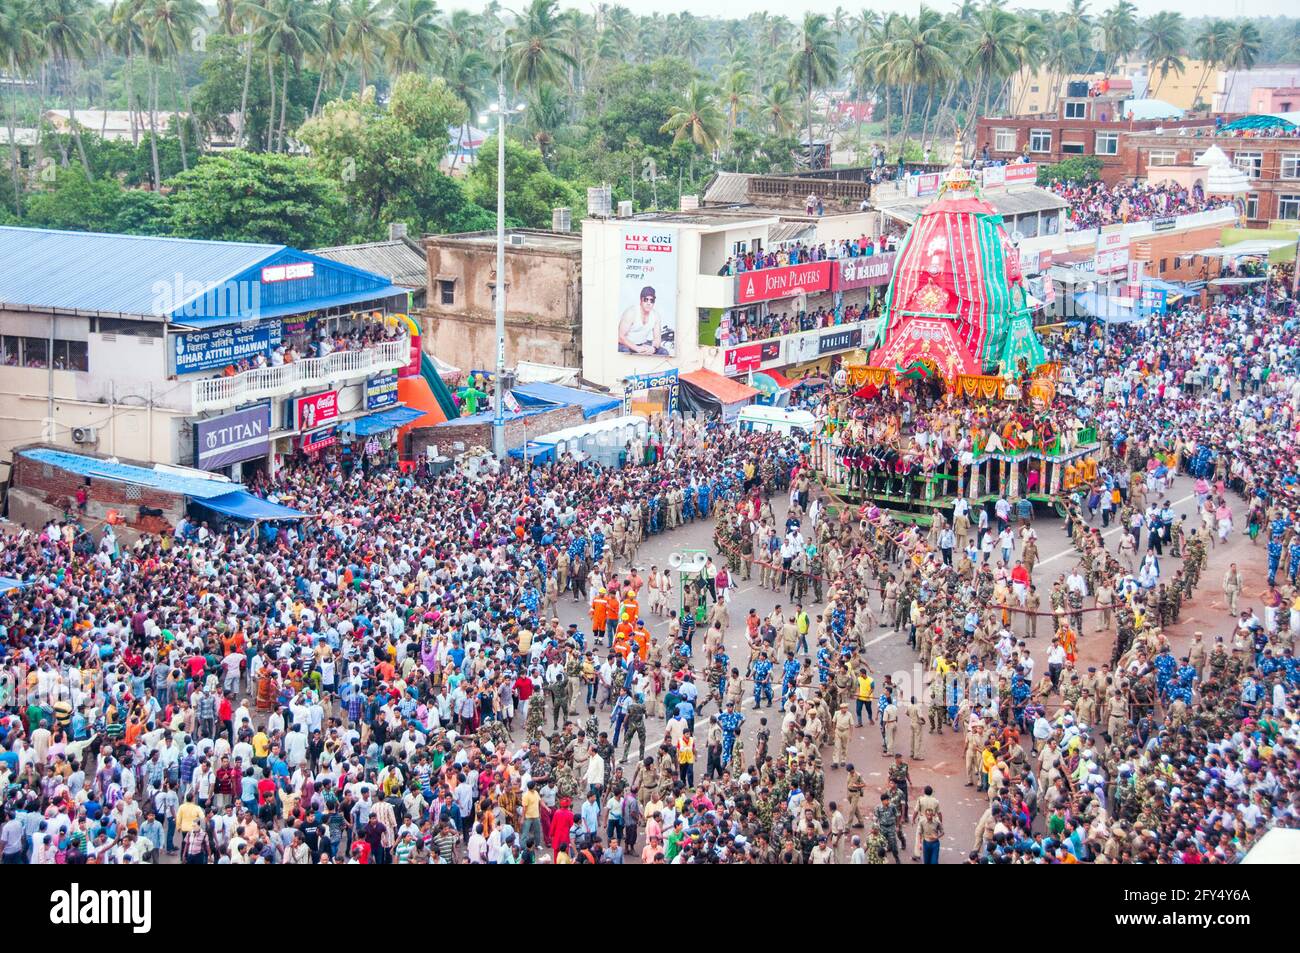 La photo montre une vue aérienne de Grand Road dans la ville de Puri. La photo a été prise lors de la procession de ratha yatra. Banque D'Images